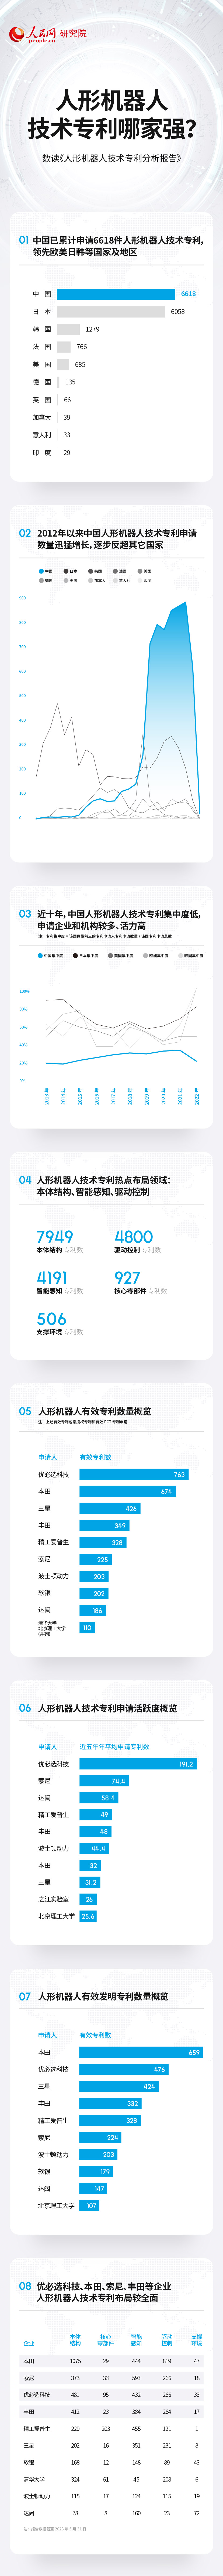 金洋61980：技术专利总数居前列 中国人形机器人产业蓬勃发展